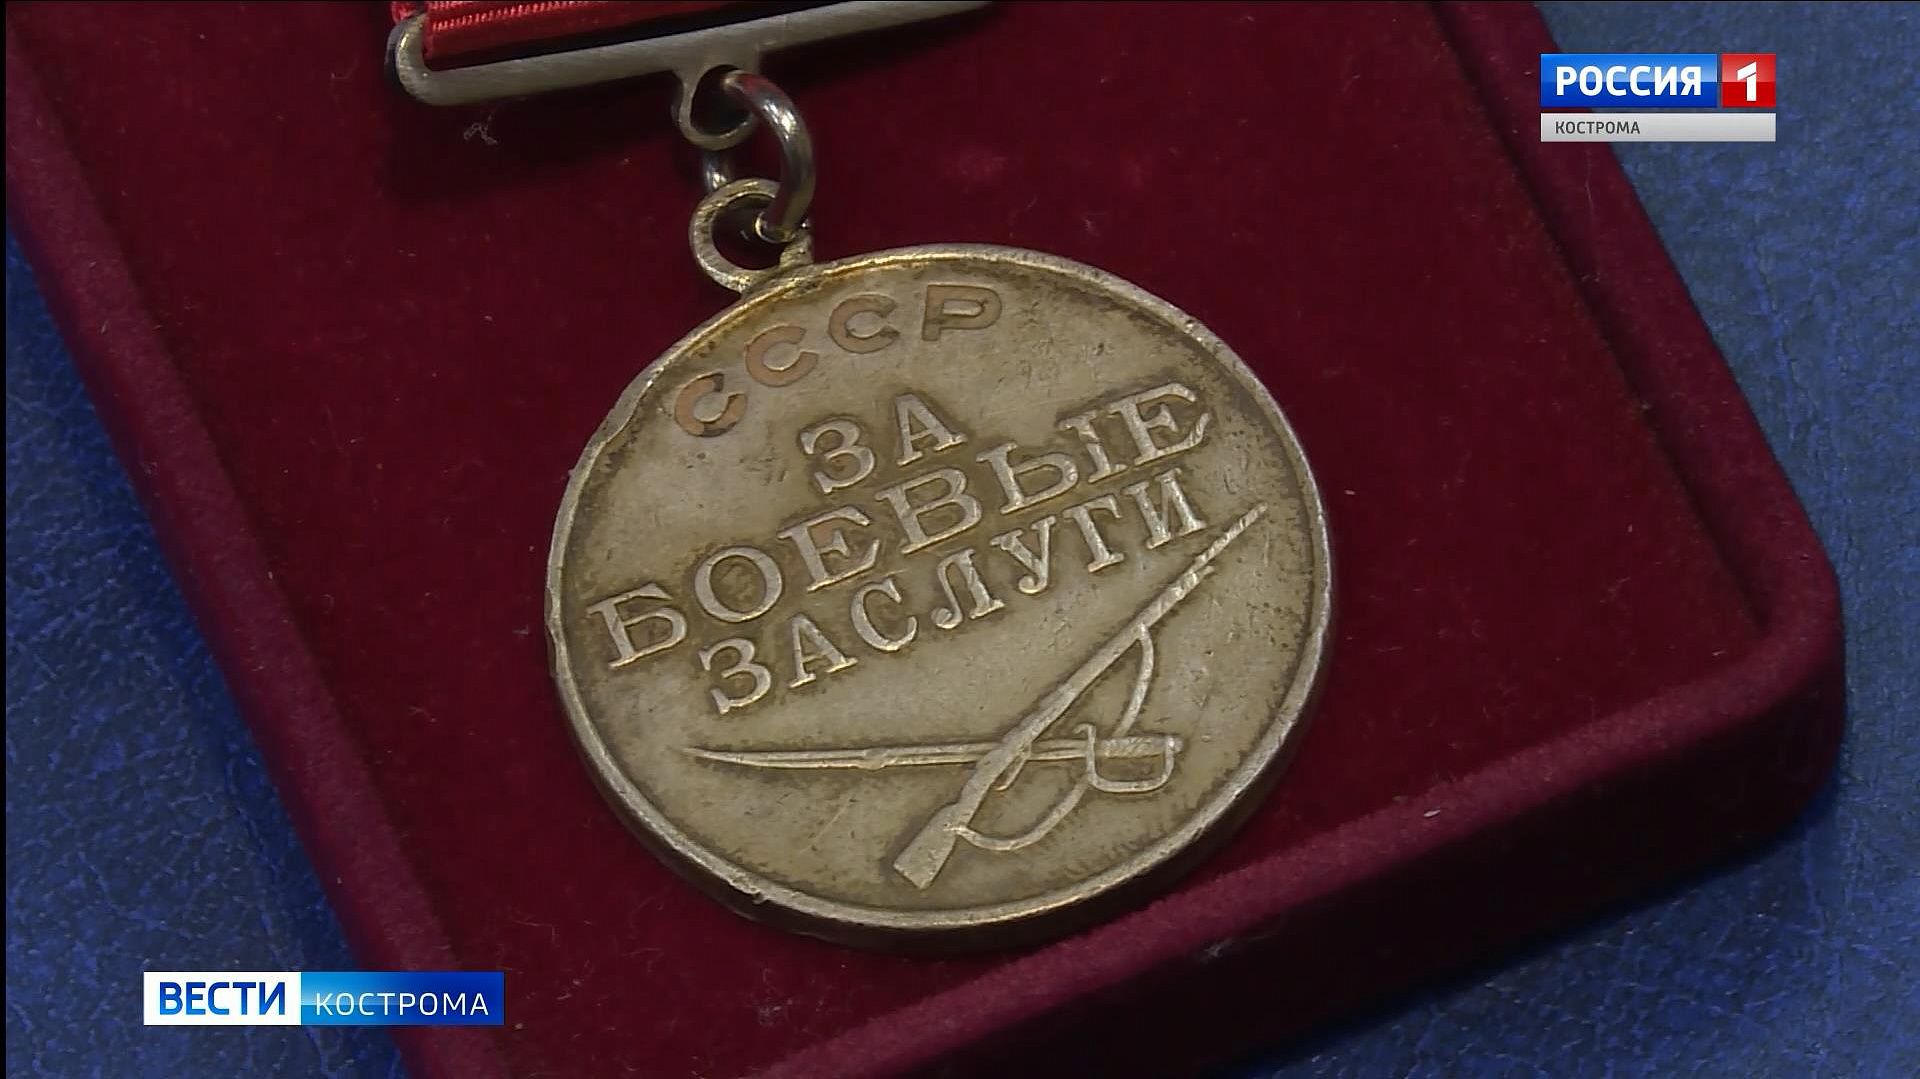 Обладателя найденной под Костромой воинской медали ищут по всей стране